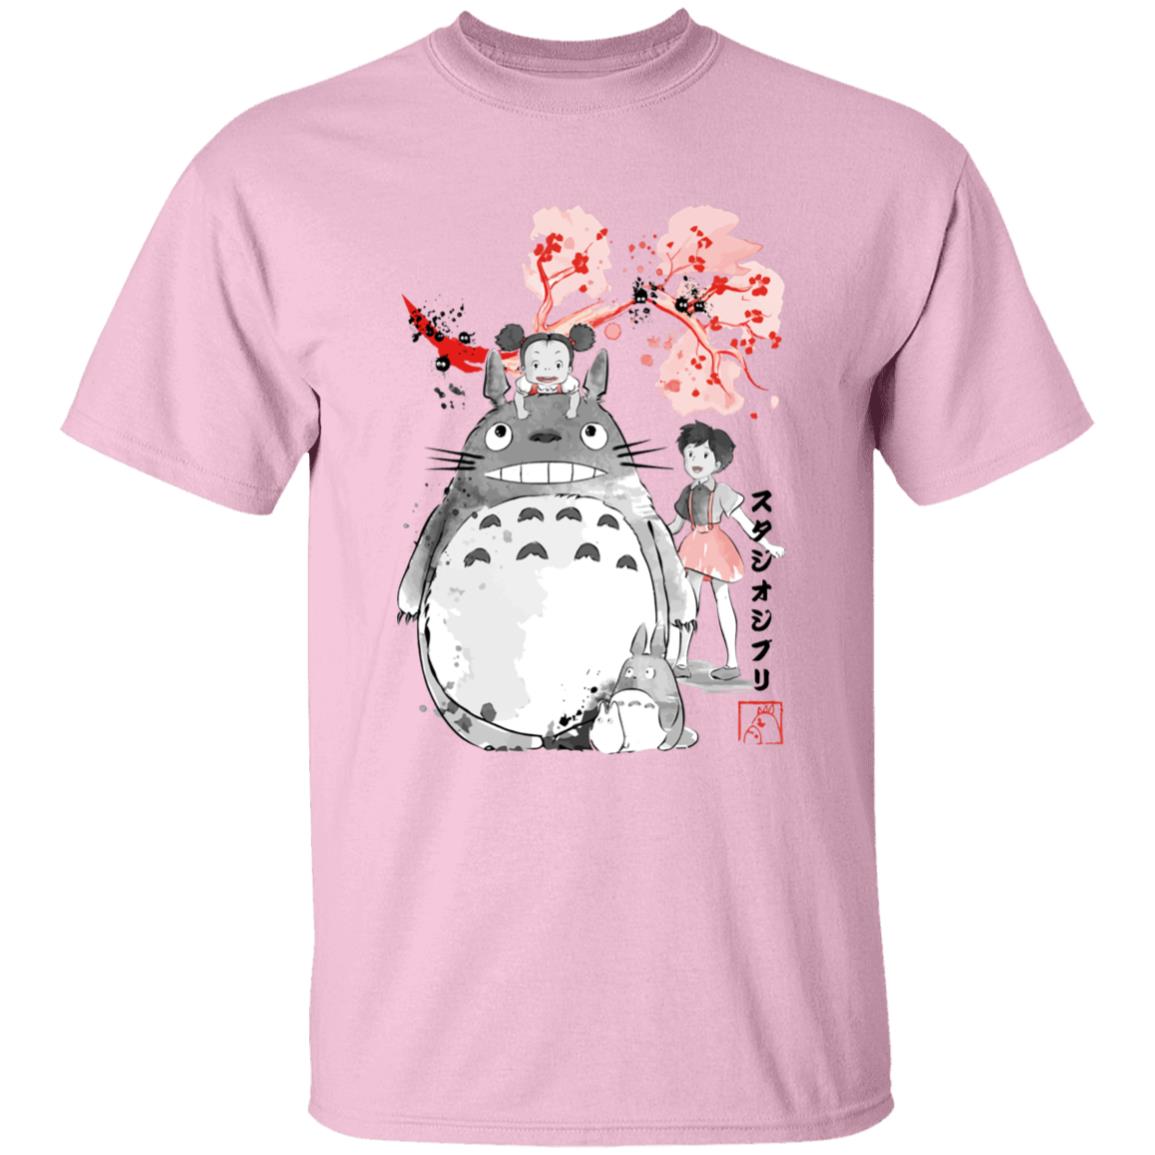 Totoro and the Girls by Sakura Flower T Shirt Ghibli Store ghibli.store